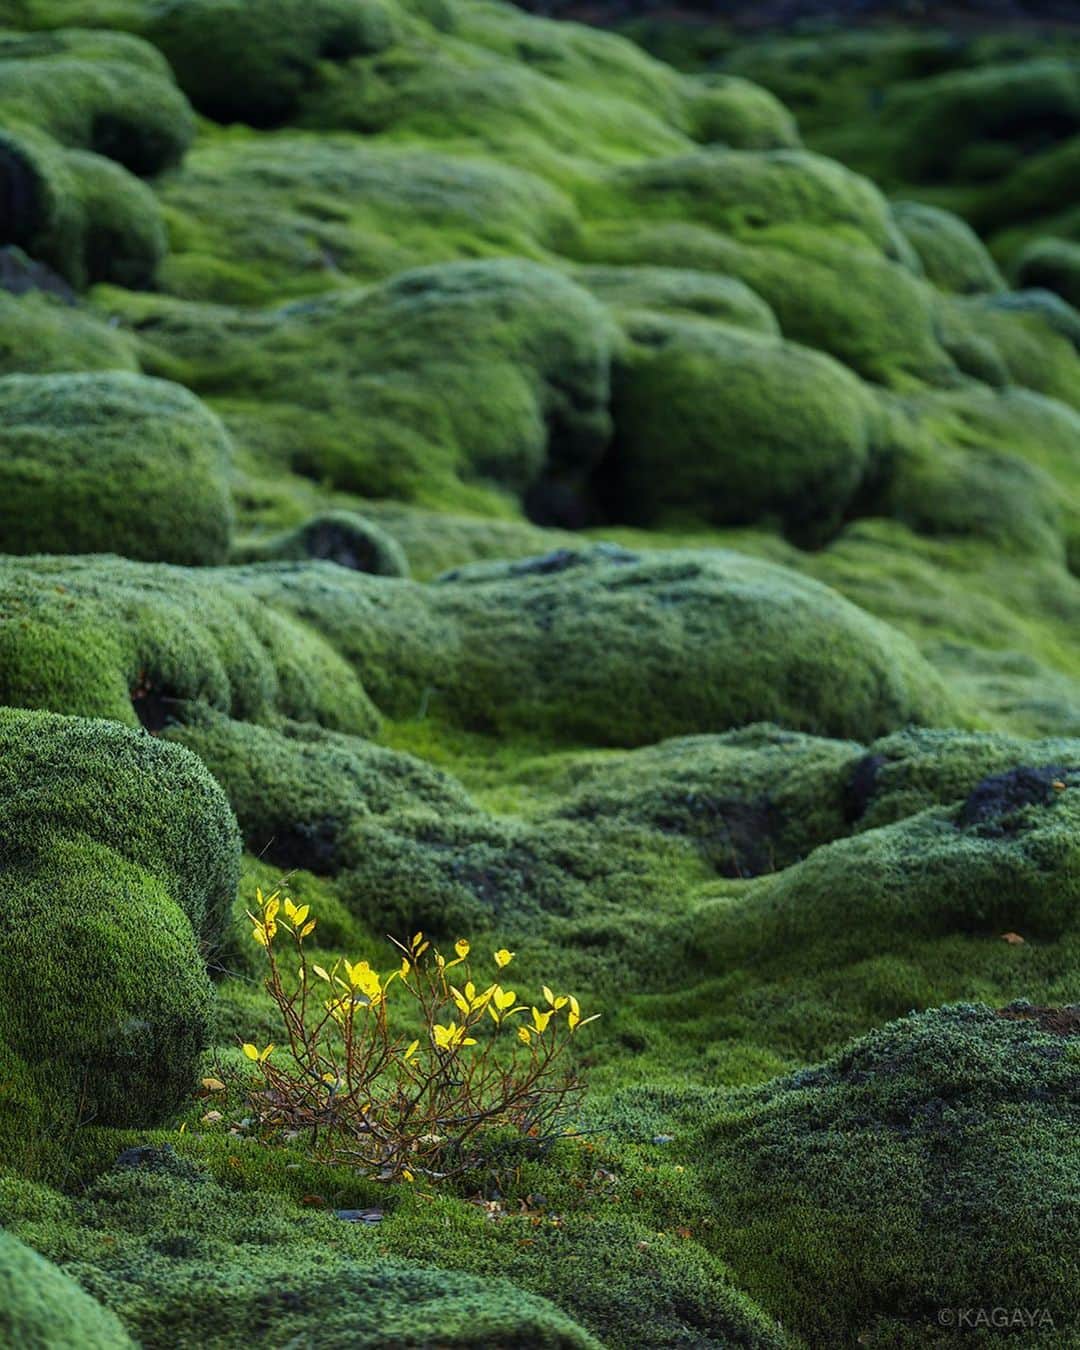 Kagayaさんのインスタグラム写真 Kagayainstagram 一面 緑の苔で覆われた溶岩の平原 先日のkagaya同行 アイスランド 星空絶景とオーロラ撮影 のツアー道中にて撮影 Iceland 10月18日 21時51分 Kagaya